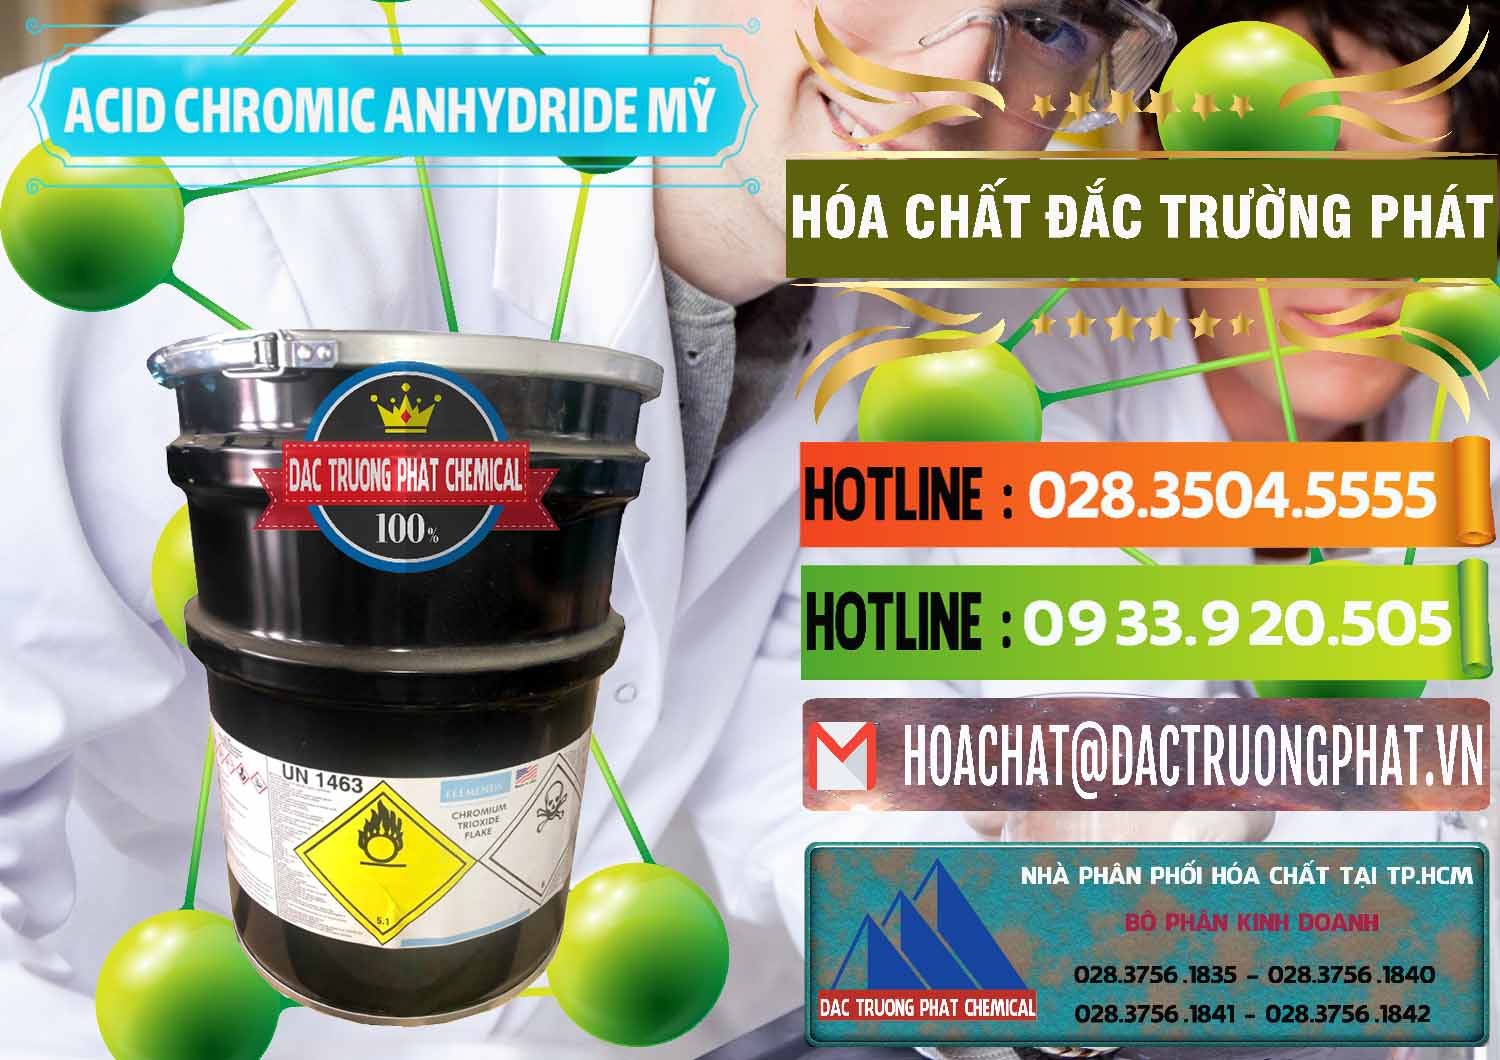 Kinh doanh và bán Acid Chromic Anhydride - Cromic CRO3 USA Mỹ - 0364 - Công ty chuyên kinh doanh và cung cấp hóa chất tại TP.HCM - cungcaphoachat.com.vn